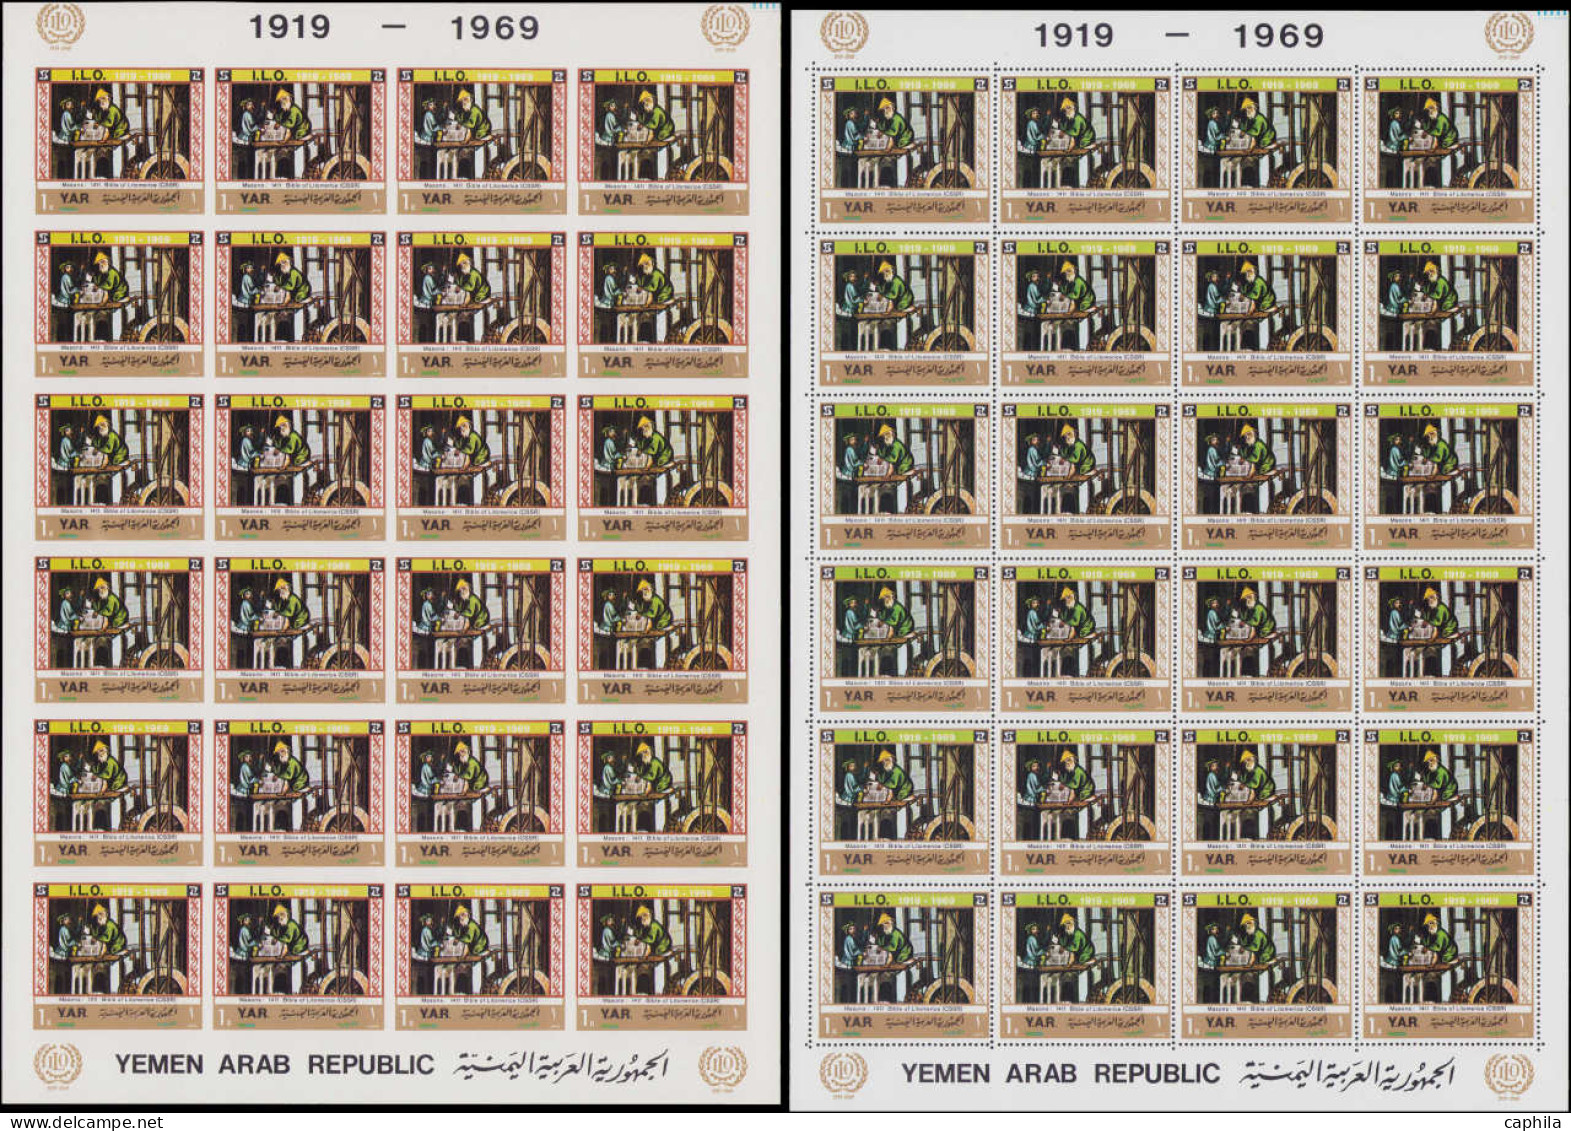 YEMEN Poste ** - Michel 938/44 A+B, en feuillets de 24 avec inscriptions marginales, dentelés + non dentelés: I.L.O. - C